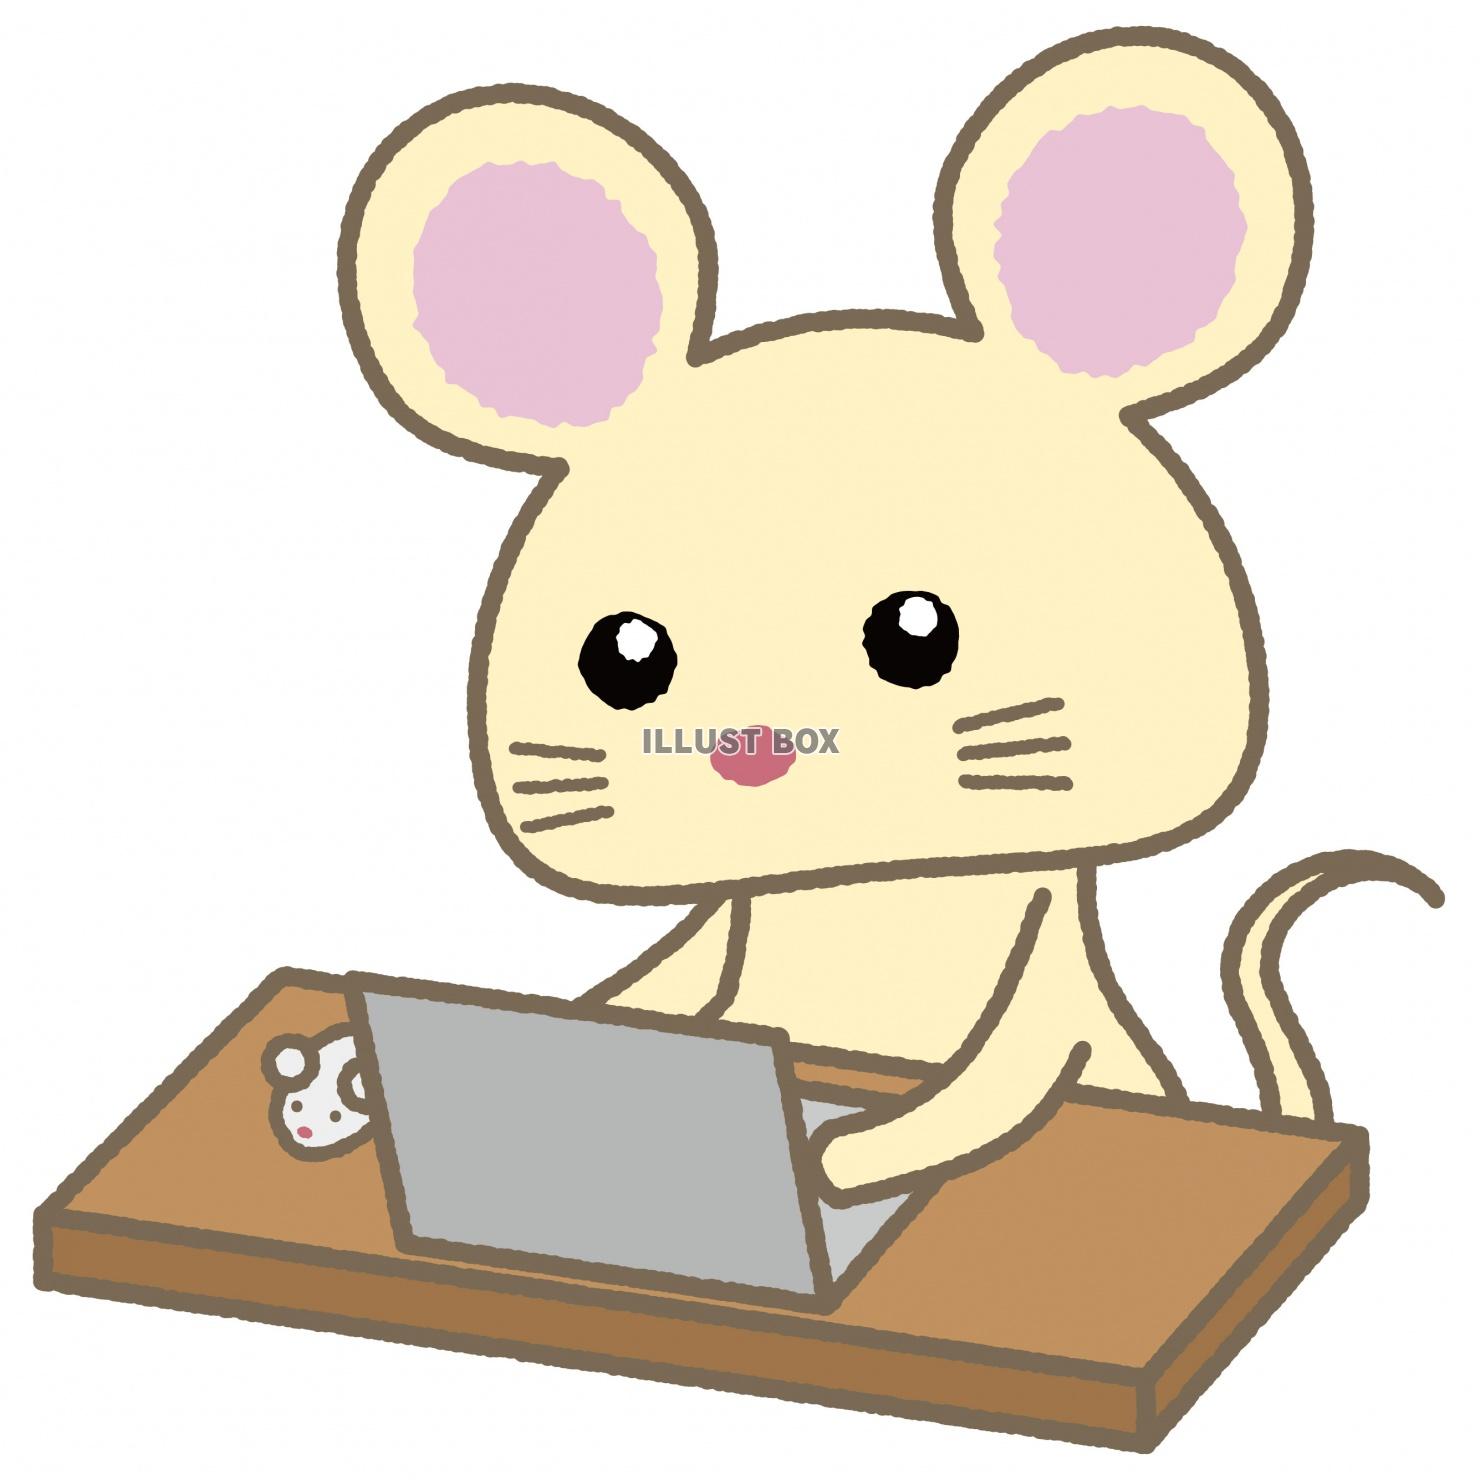 50 ネズミ マウス イラスト フリー 2425 ネズミ マウス イラスト フリー